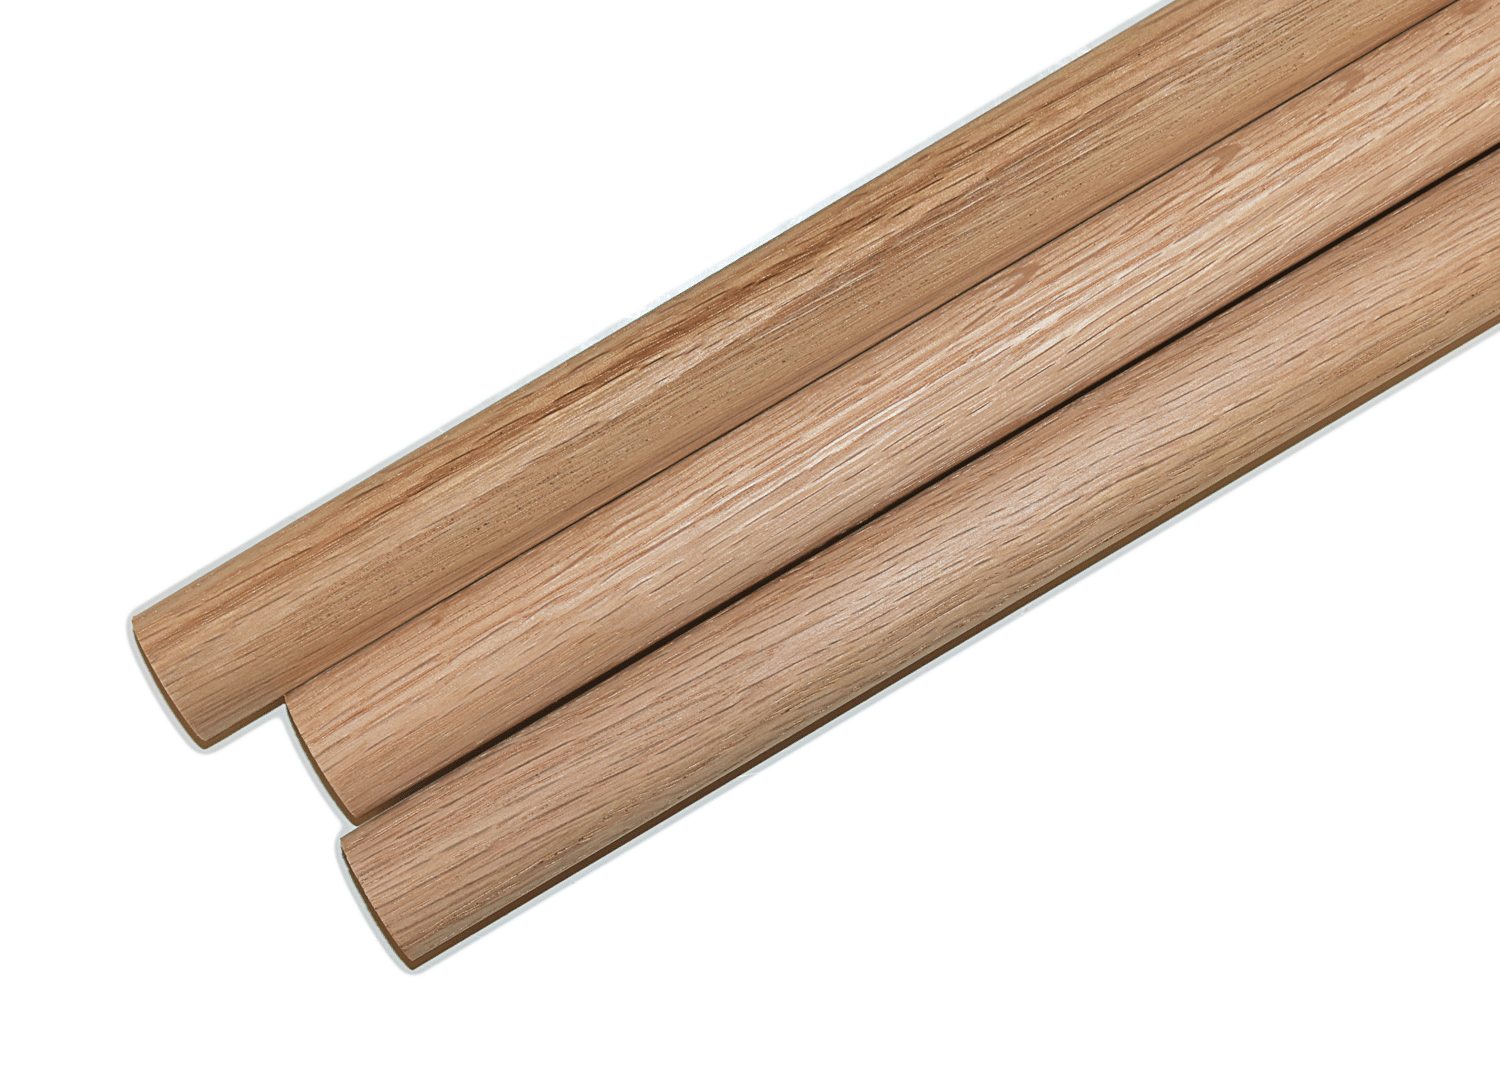 1/4 x 36 Wooden Dowel Rods